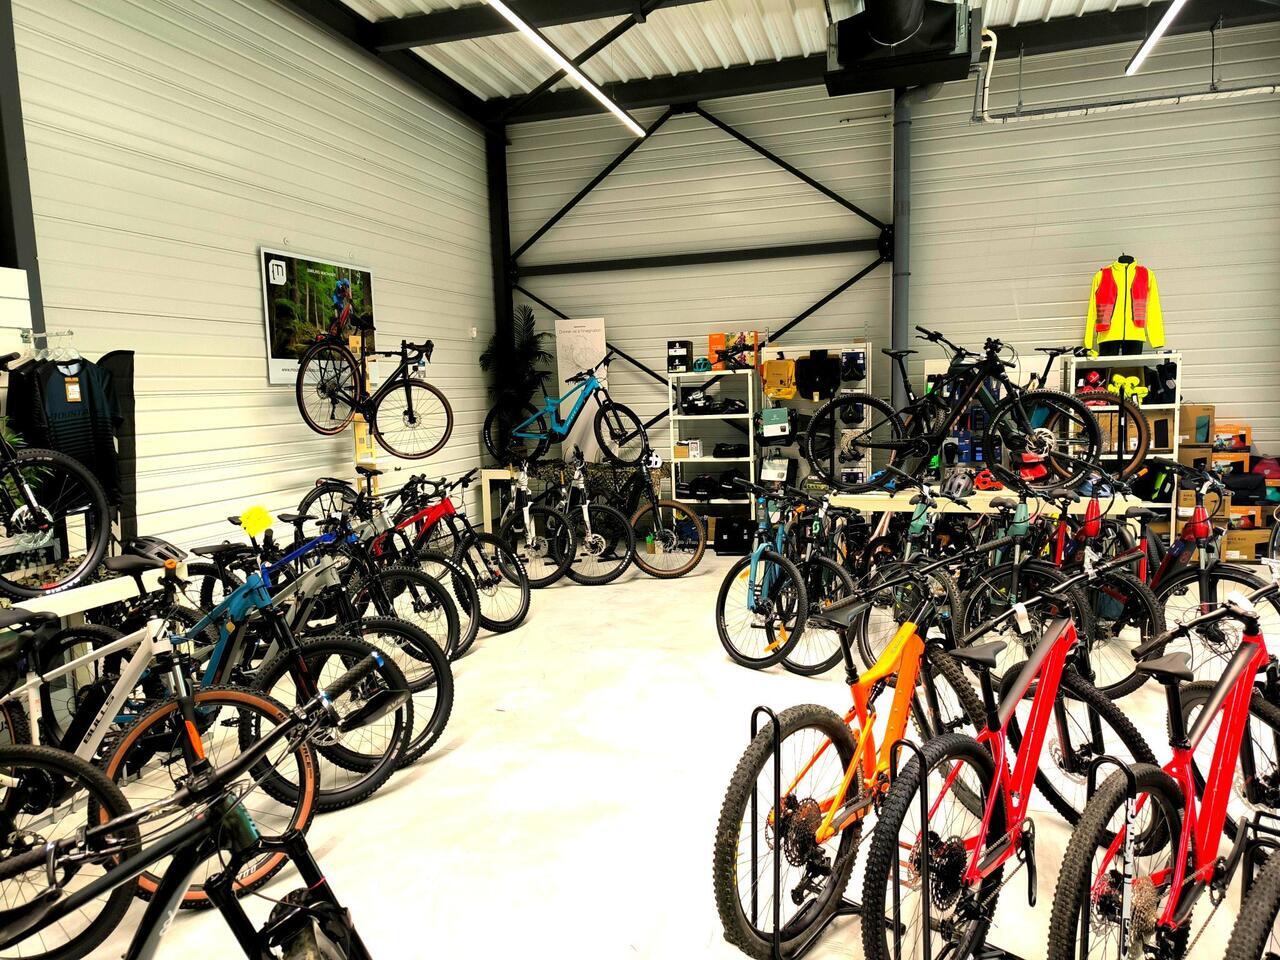 Action Vélo magasin de vélo à Saintes Magasin Veloland Saintes